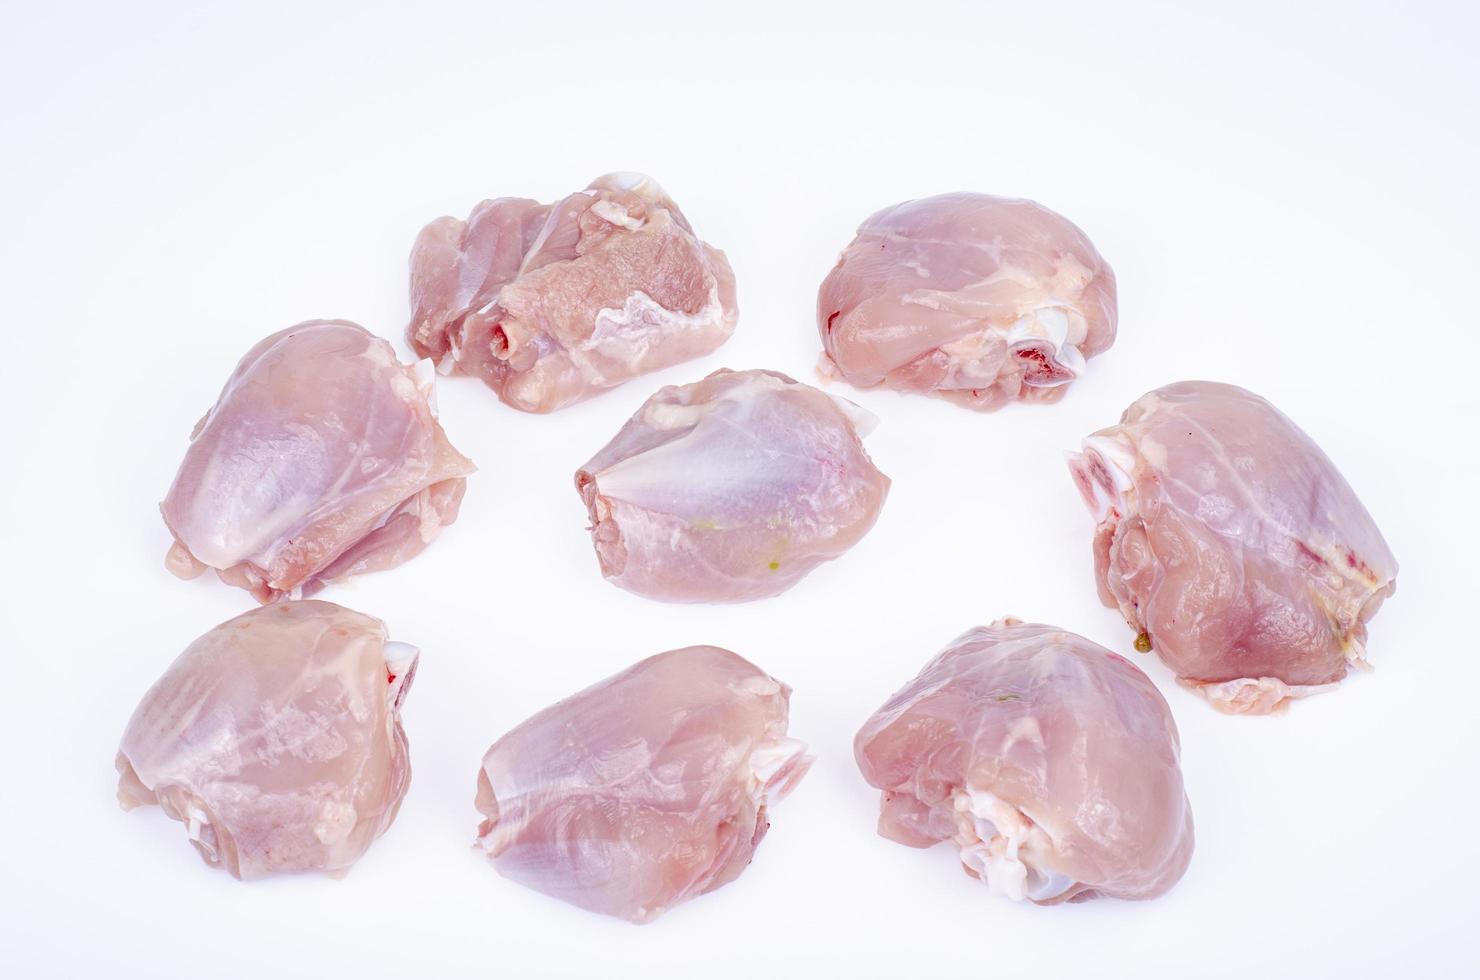 stukjes gesneden rauwe kip, been dijen op witte achtergrond. studiofoto. foto